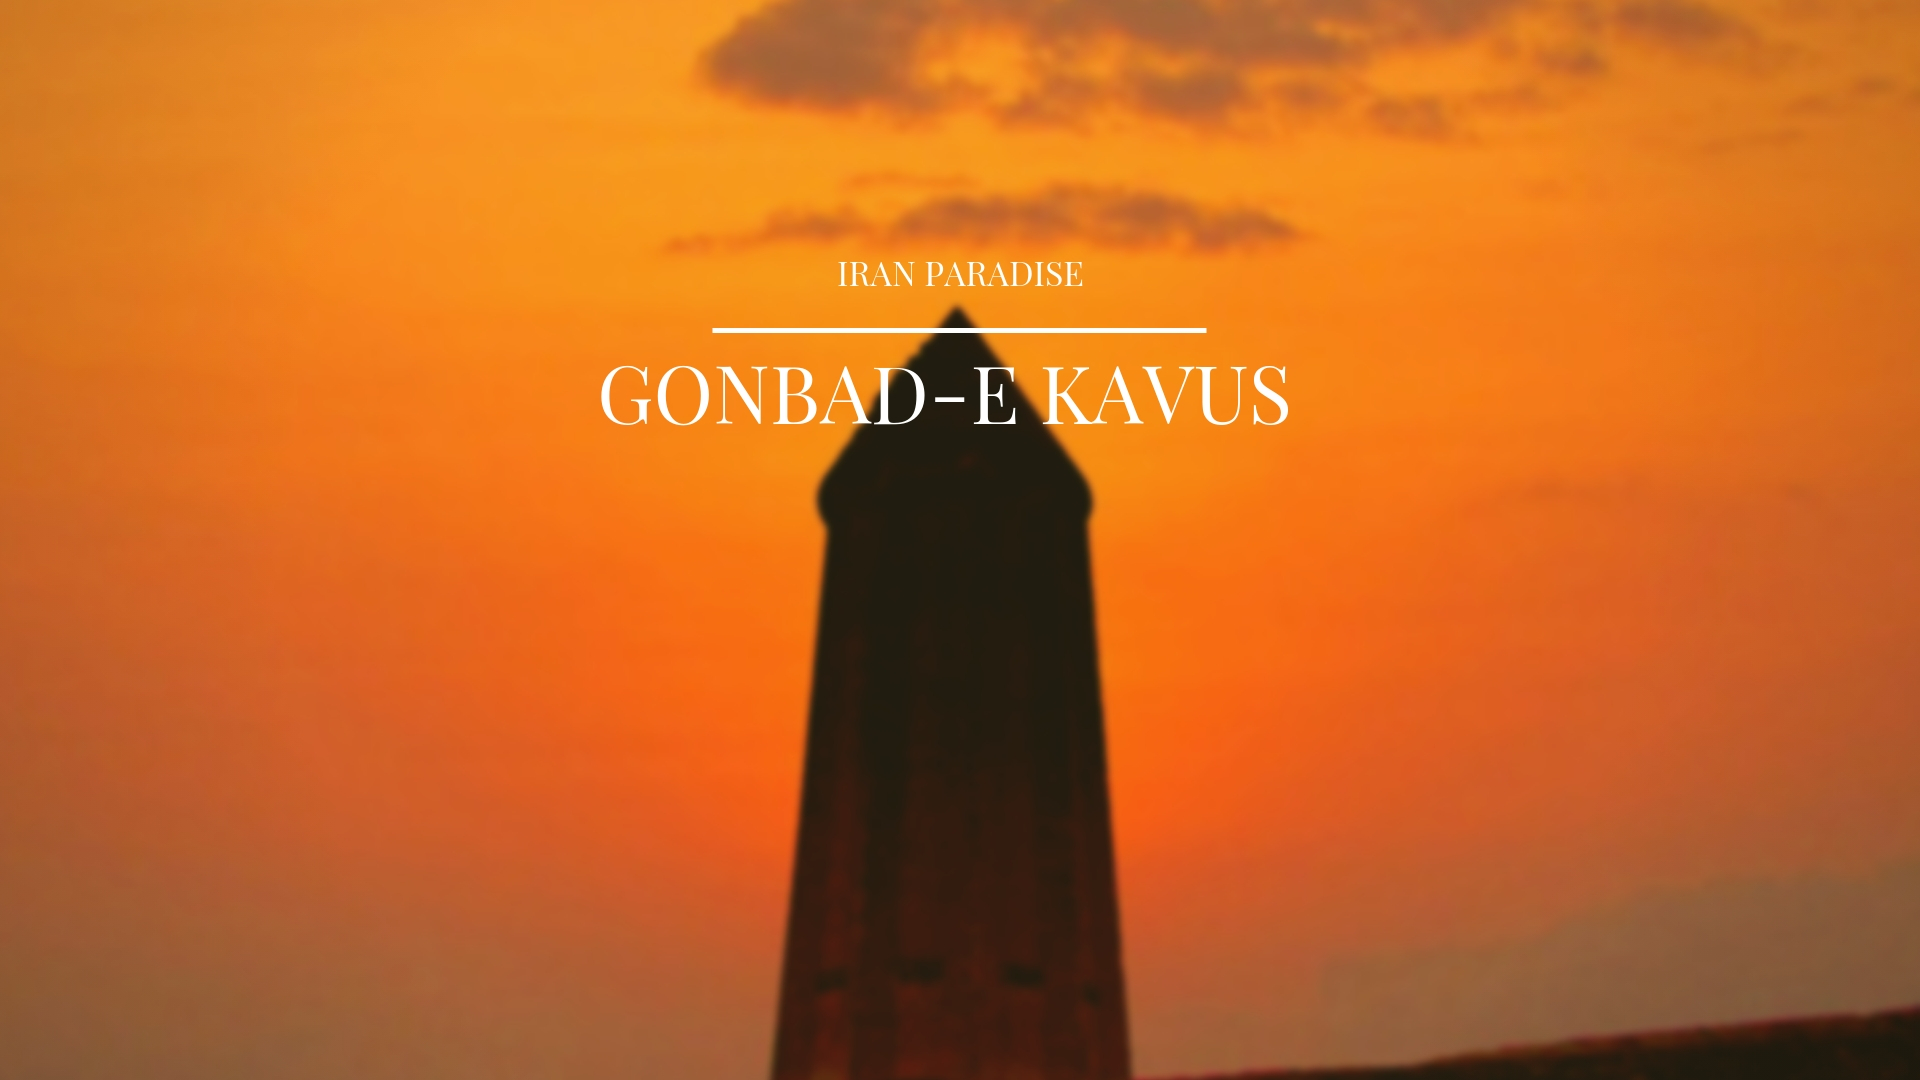 Gonbad-e Kavus